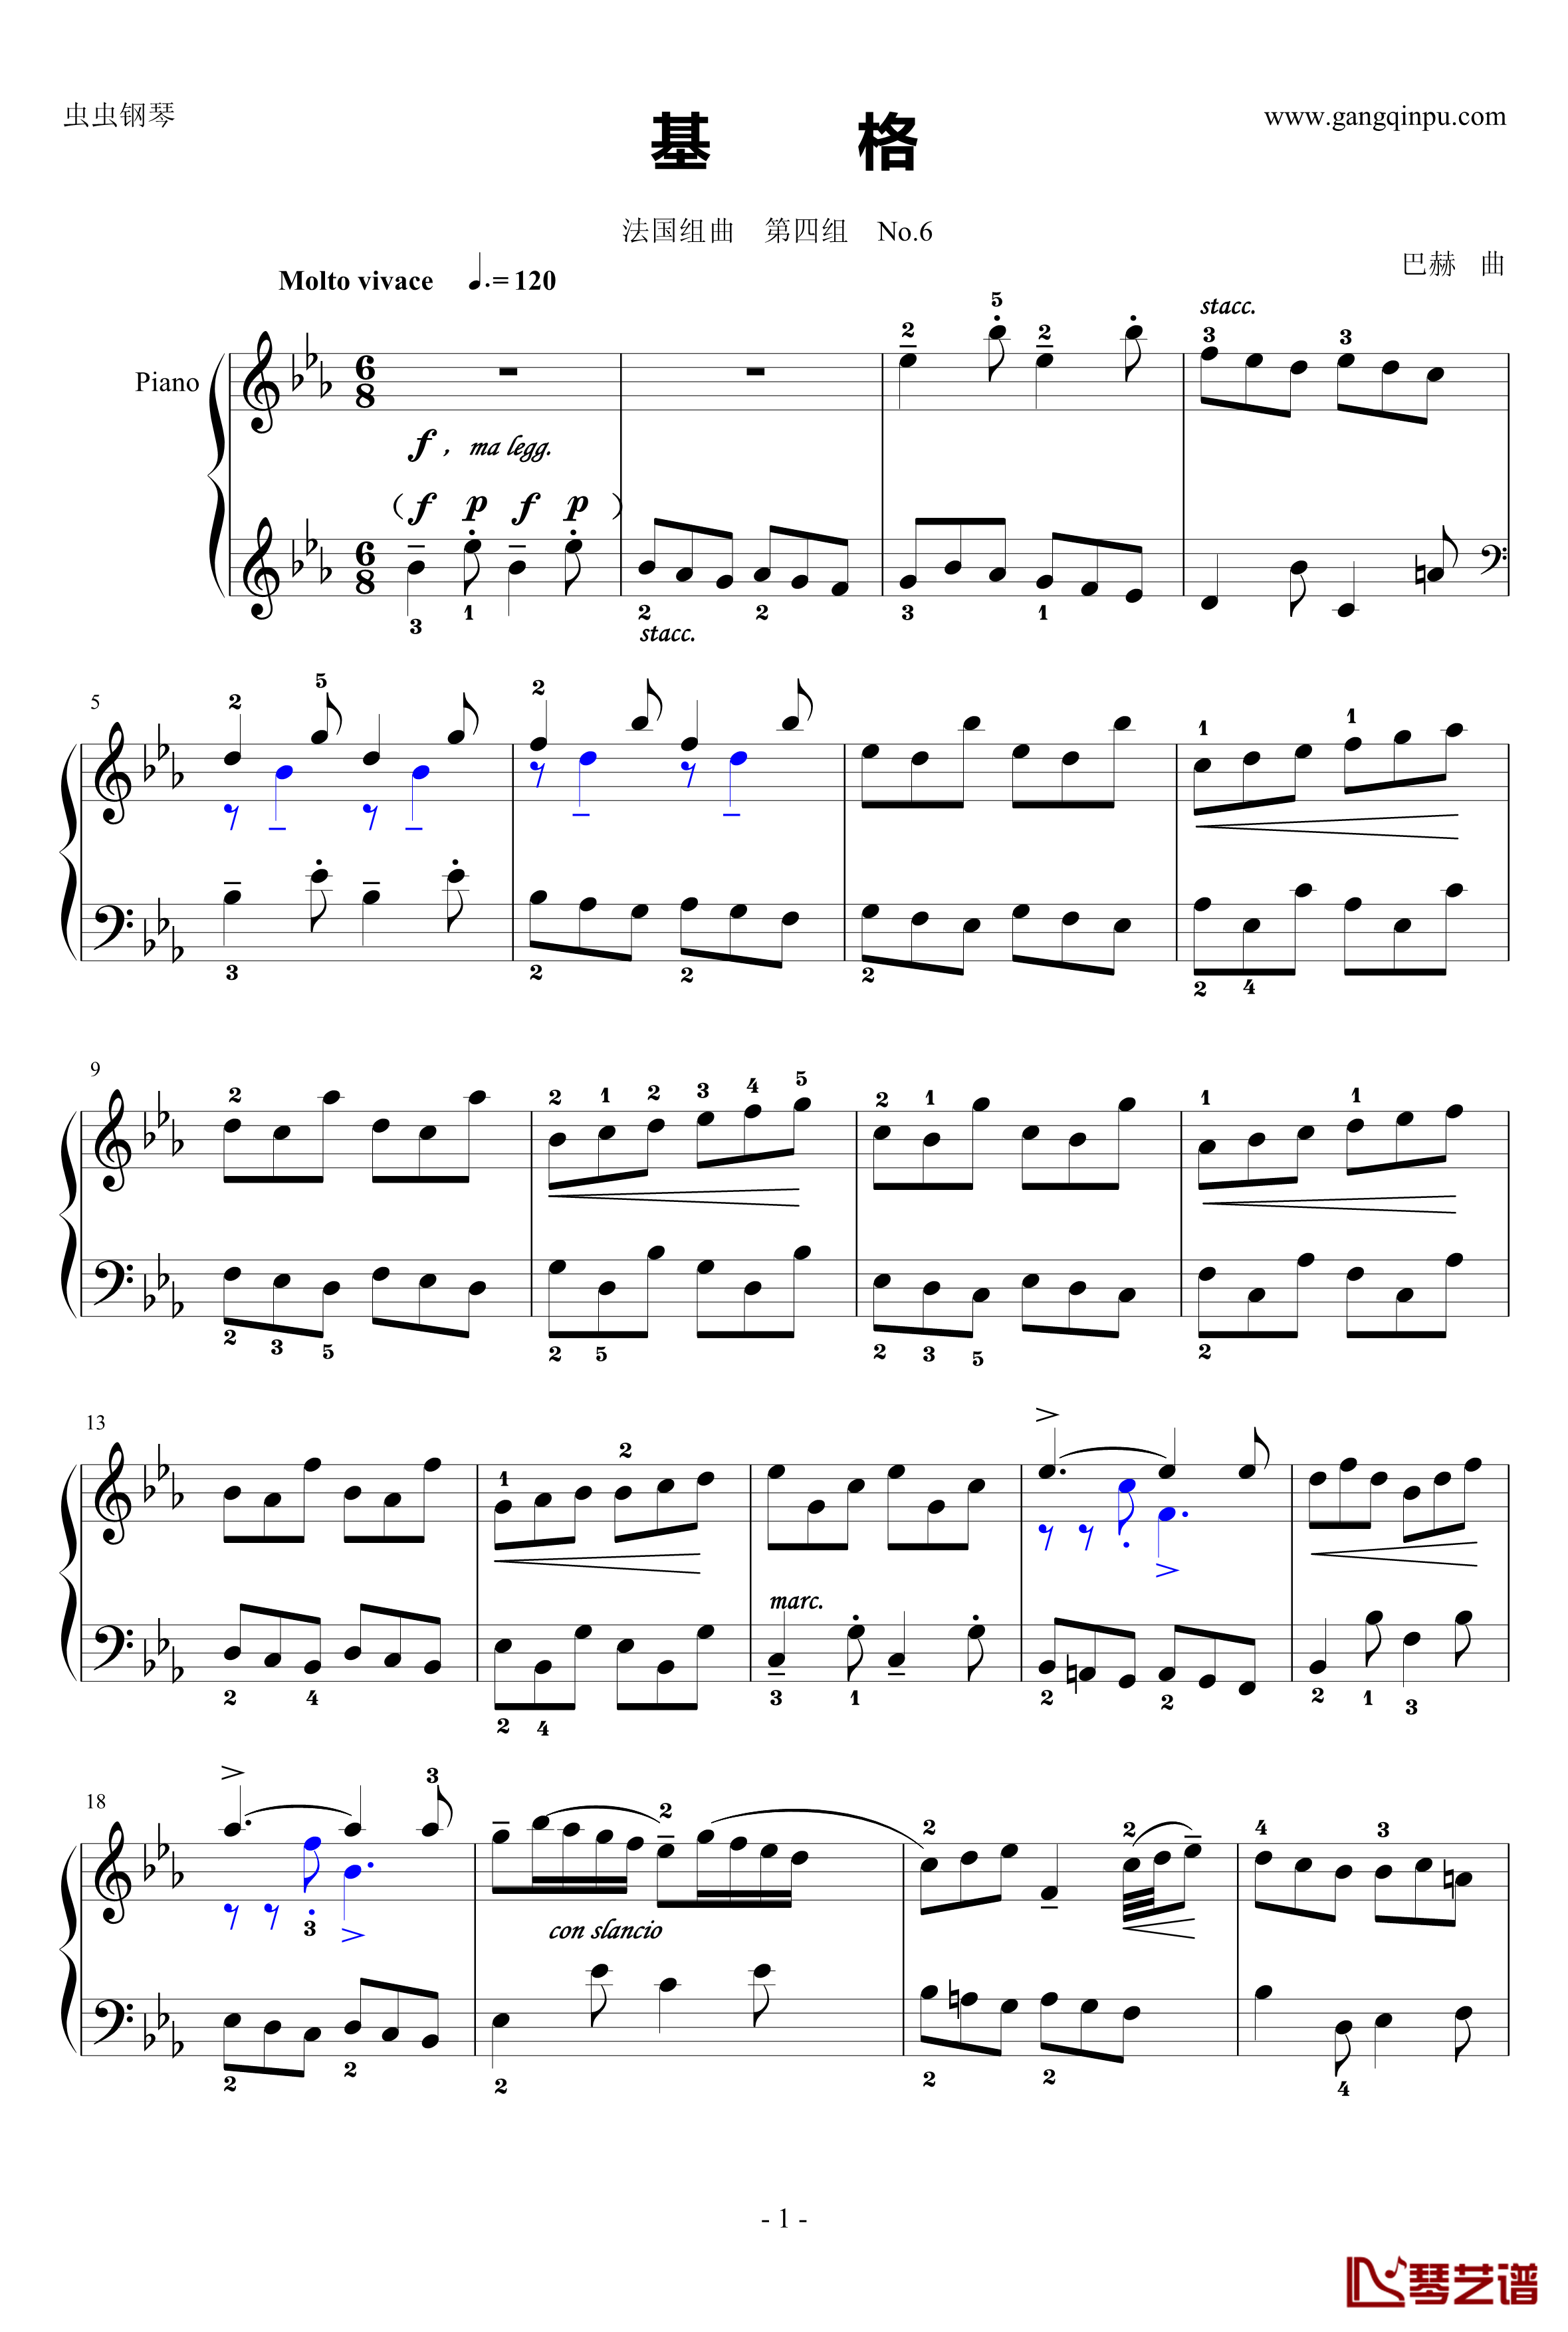 基格钢琴谱-法国组曲四 No.6-奥芬巴赫1